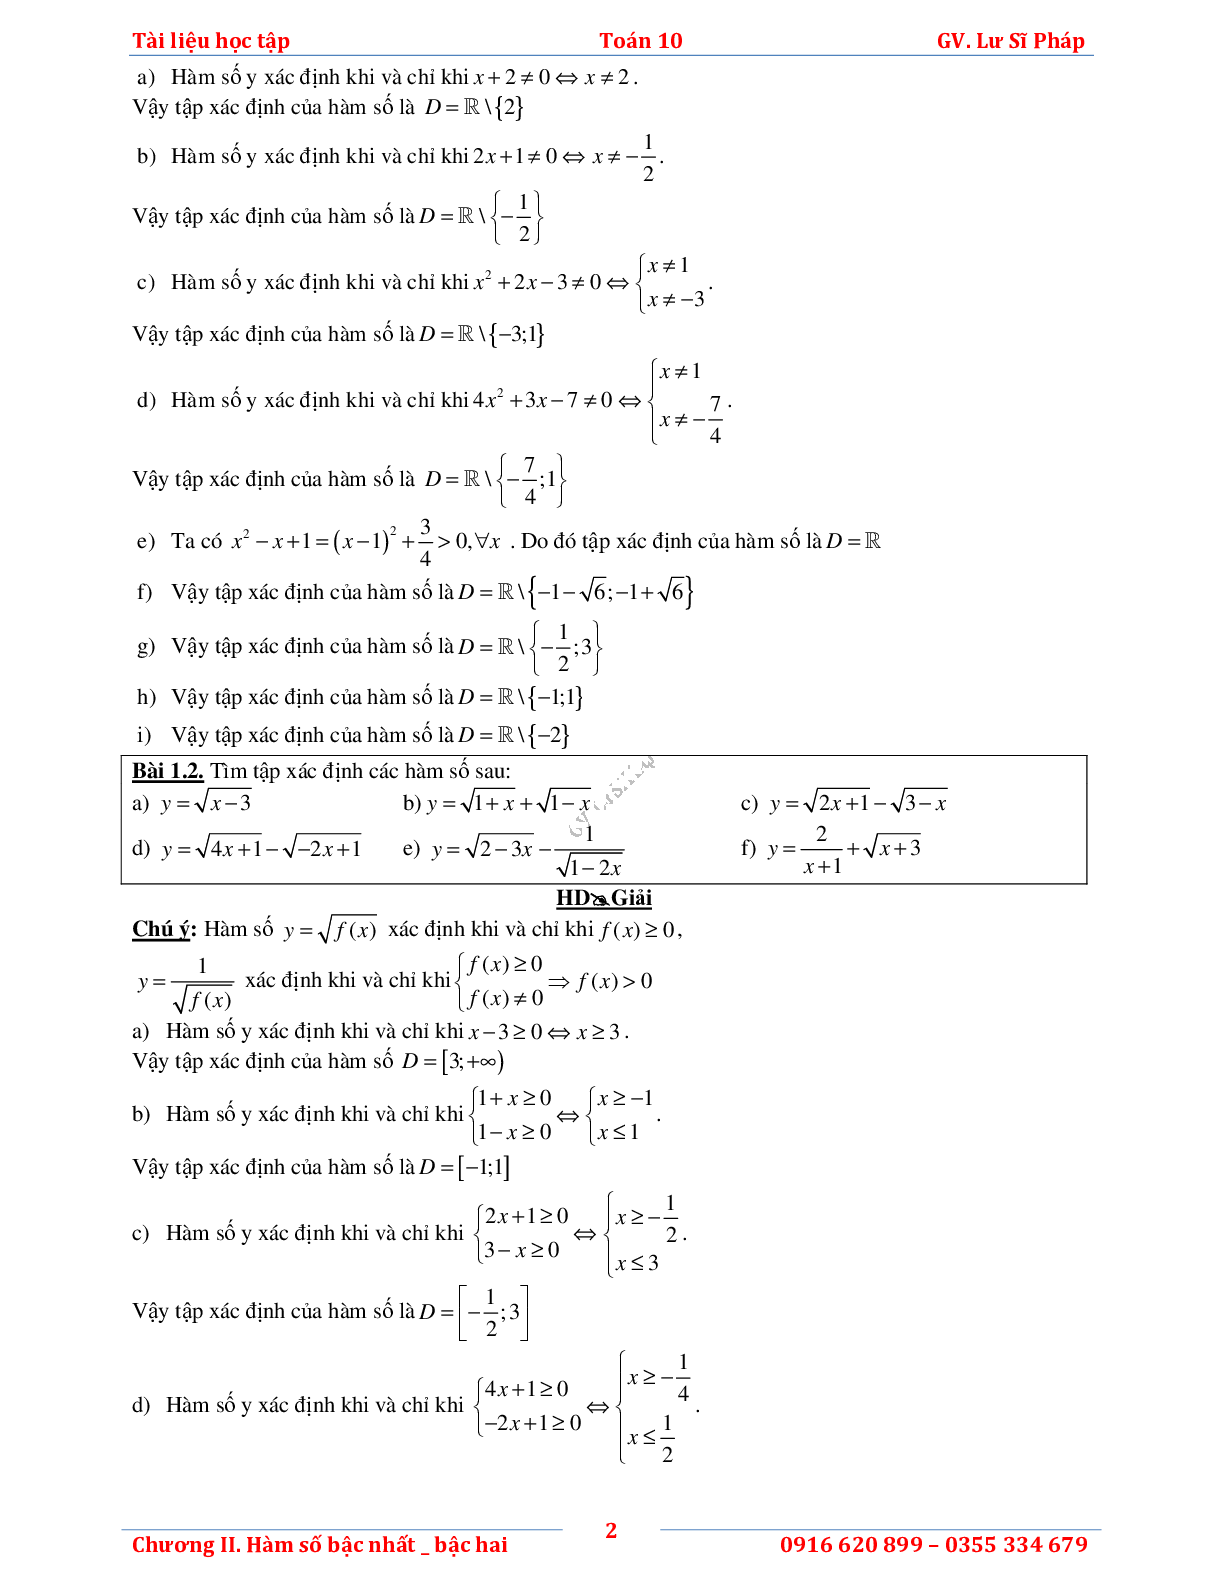 Tài liệu học tập hàm số bậc nhất và bậc hai (trang 6)